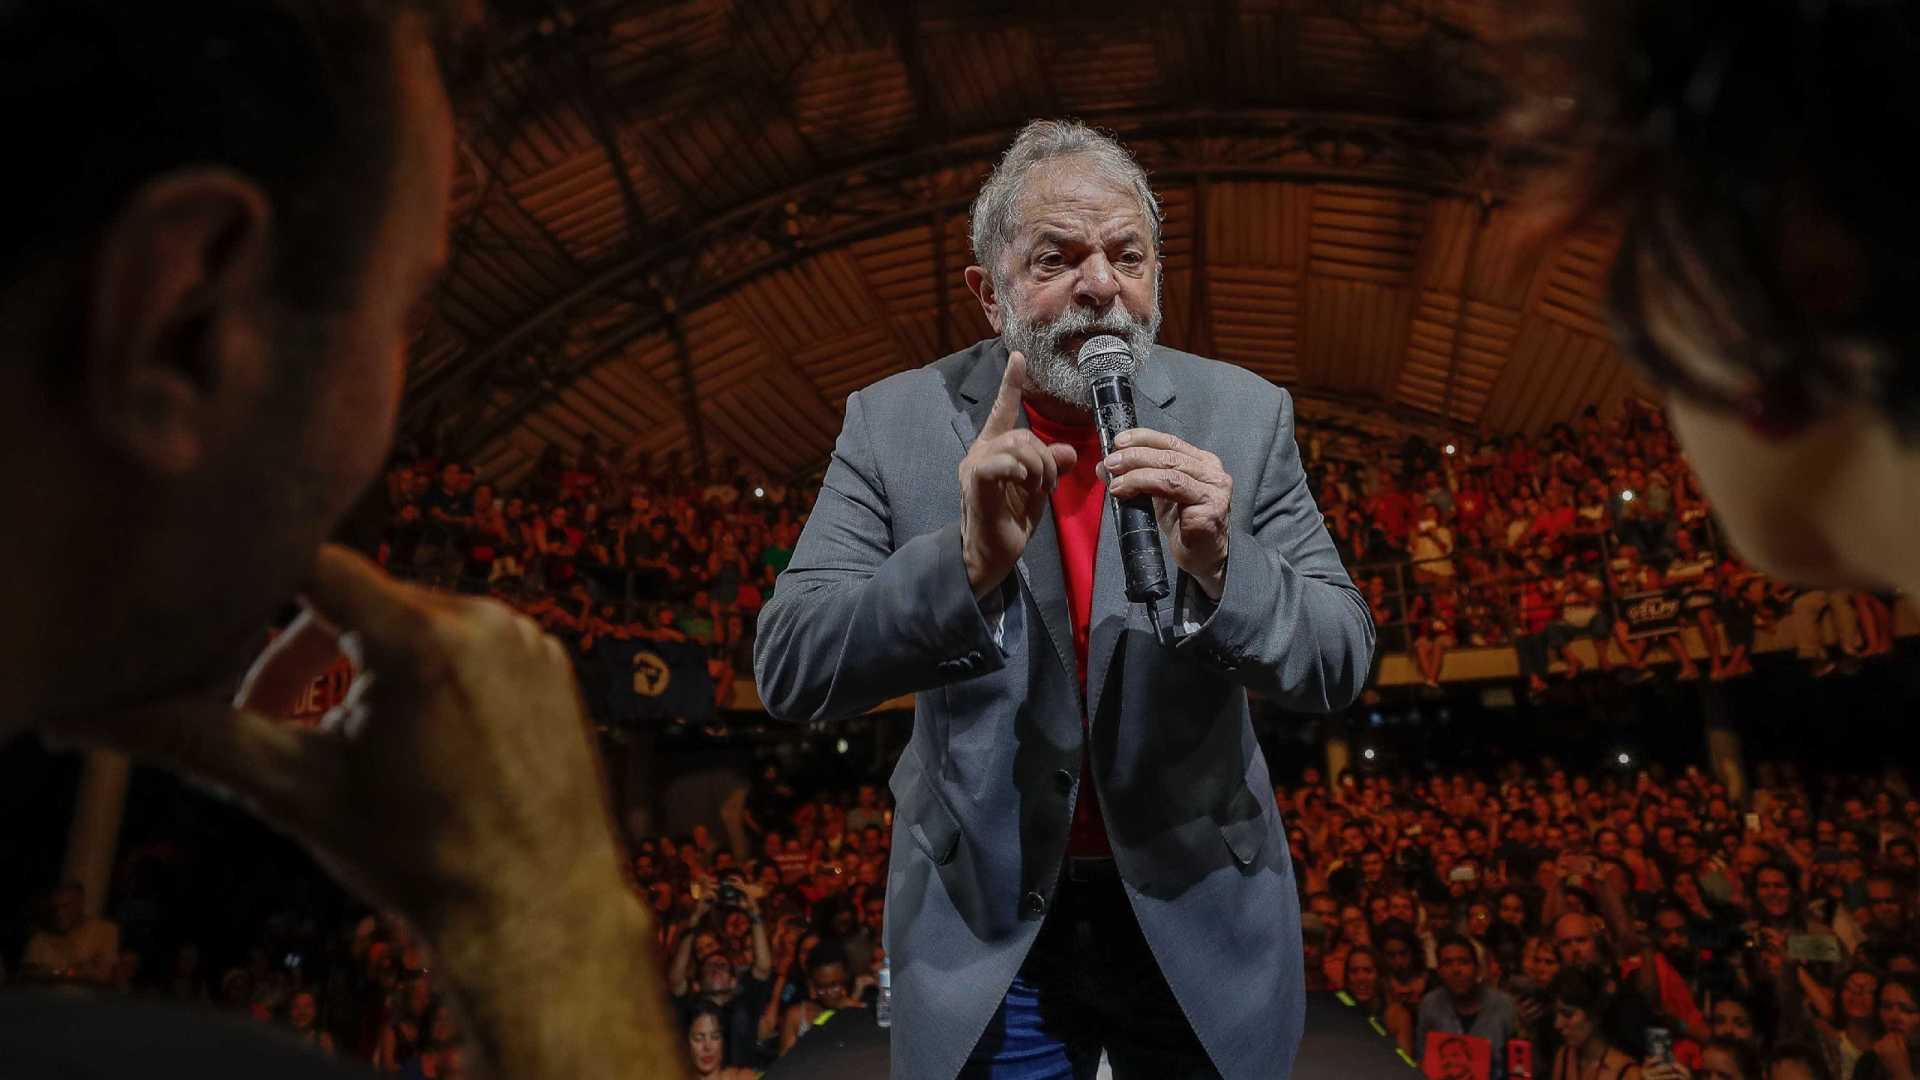 ‘O que temem que eu fale?’, diz Lula sobre proibição de entrevista